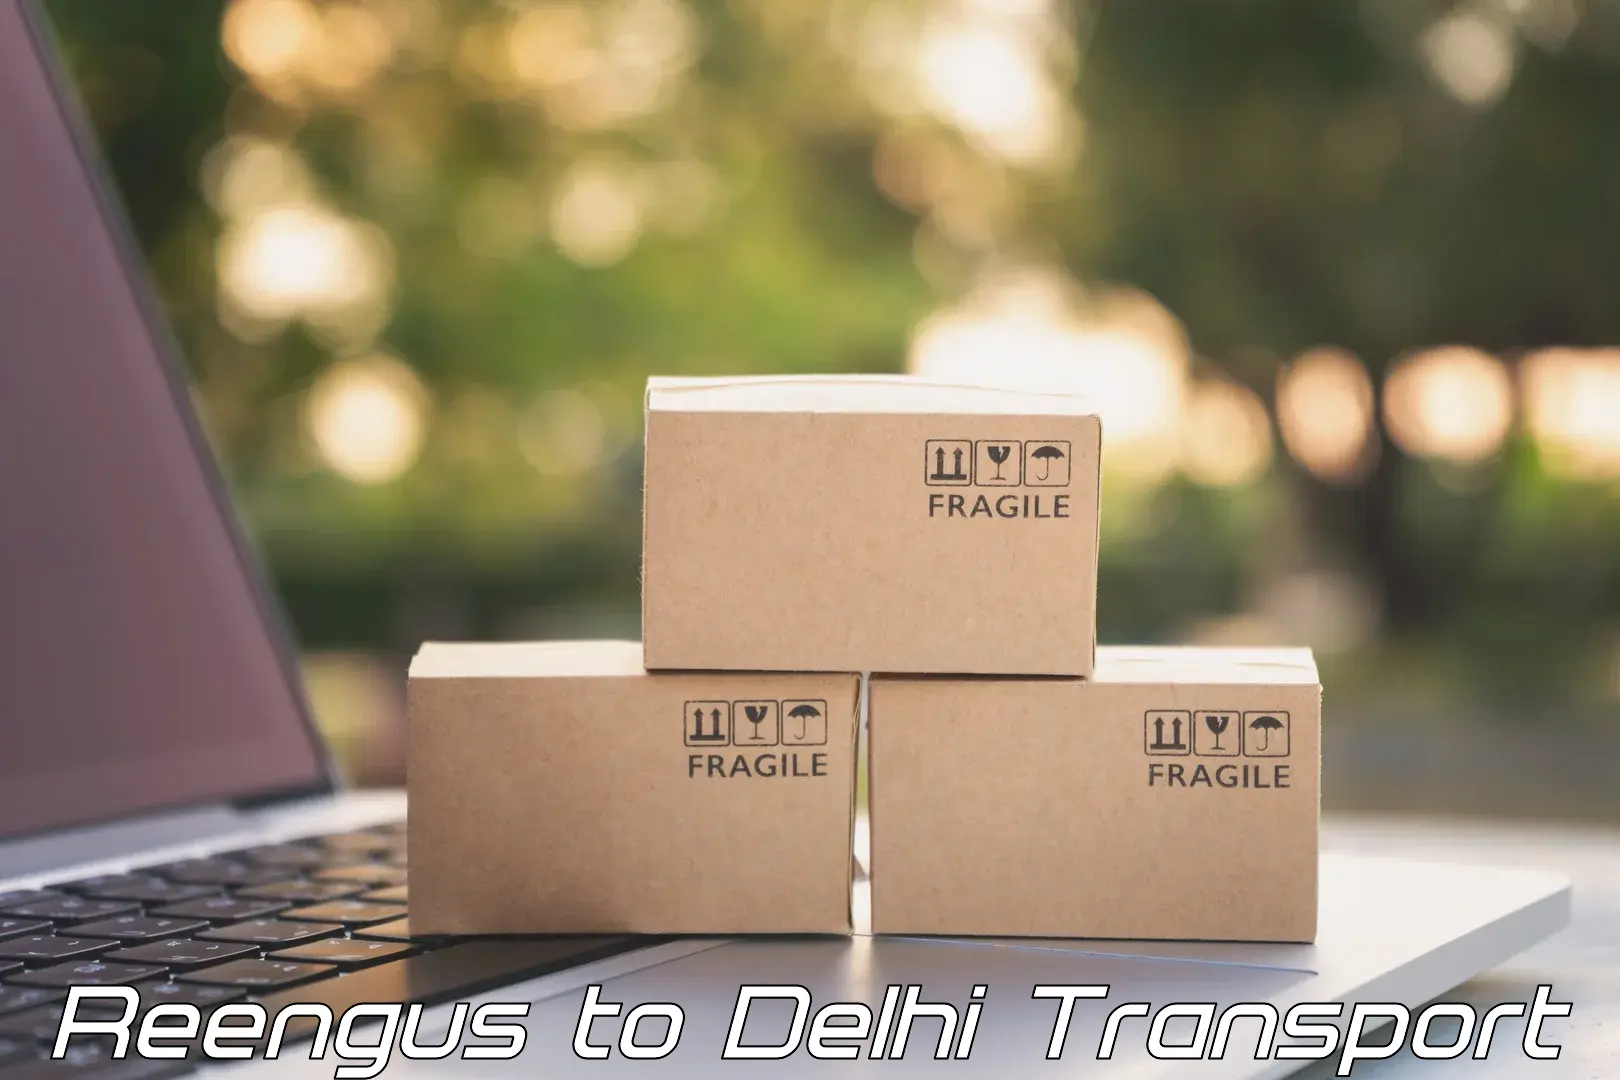 Daily transport service Reengus to Jamia Millia Islamia New Delhi